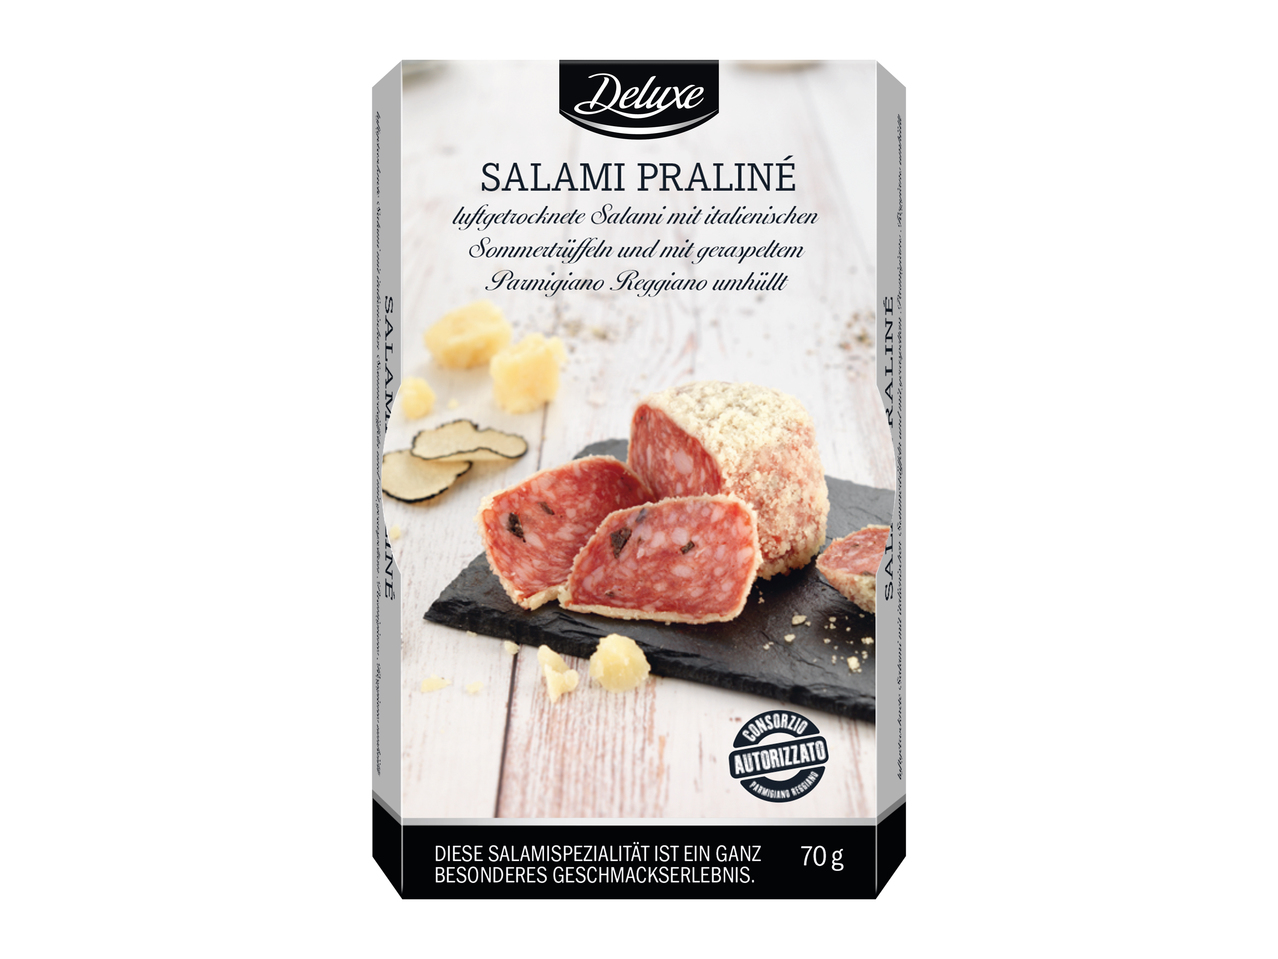 Salami praliné